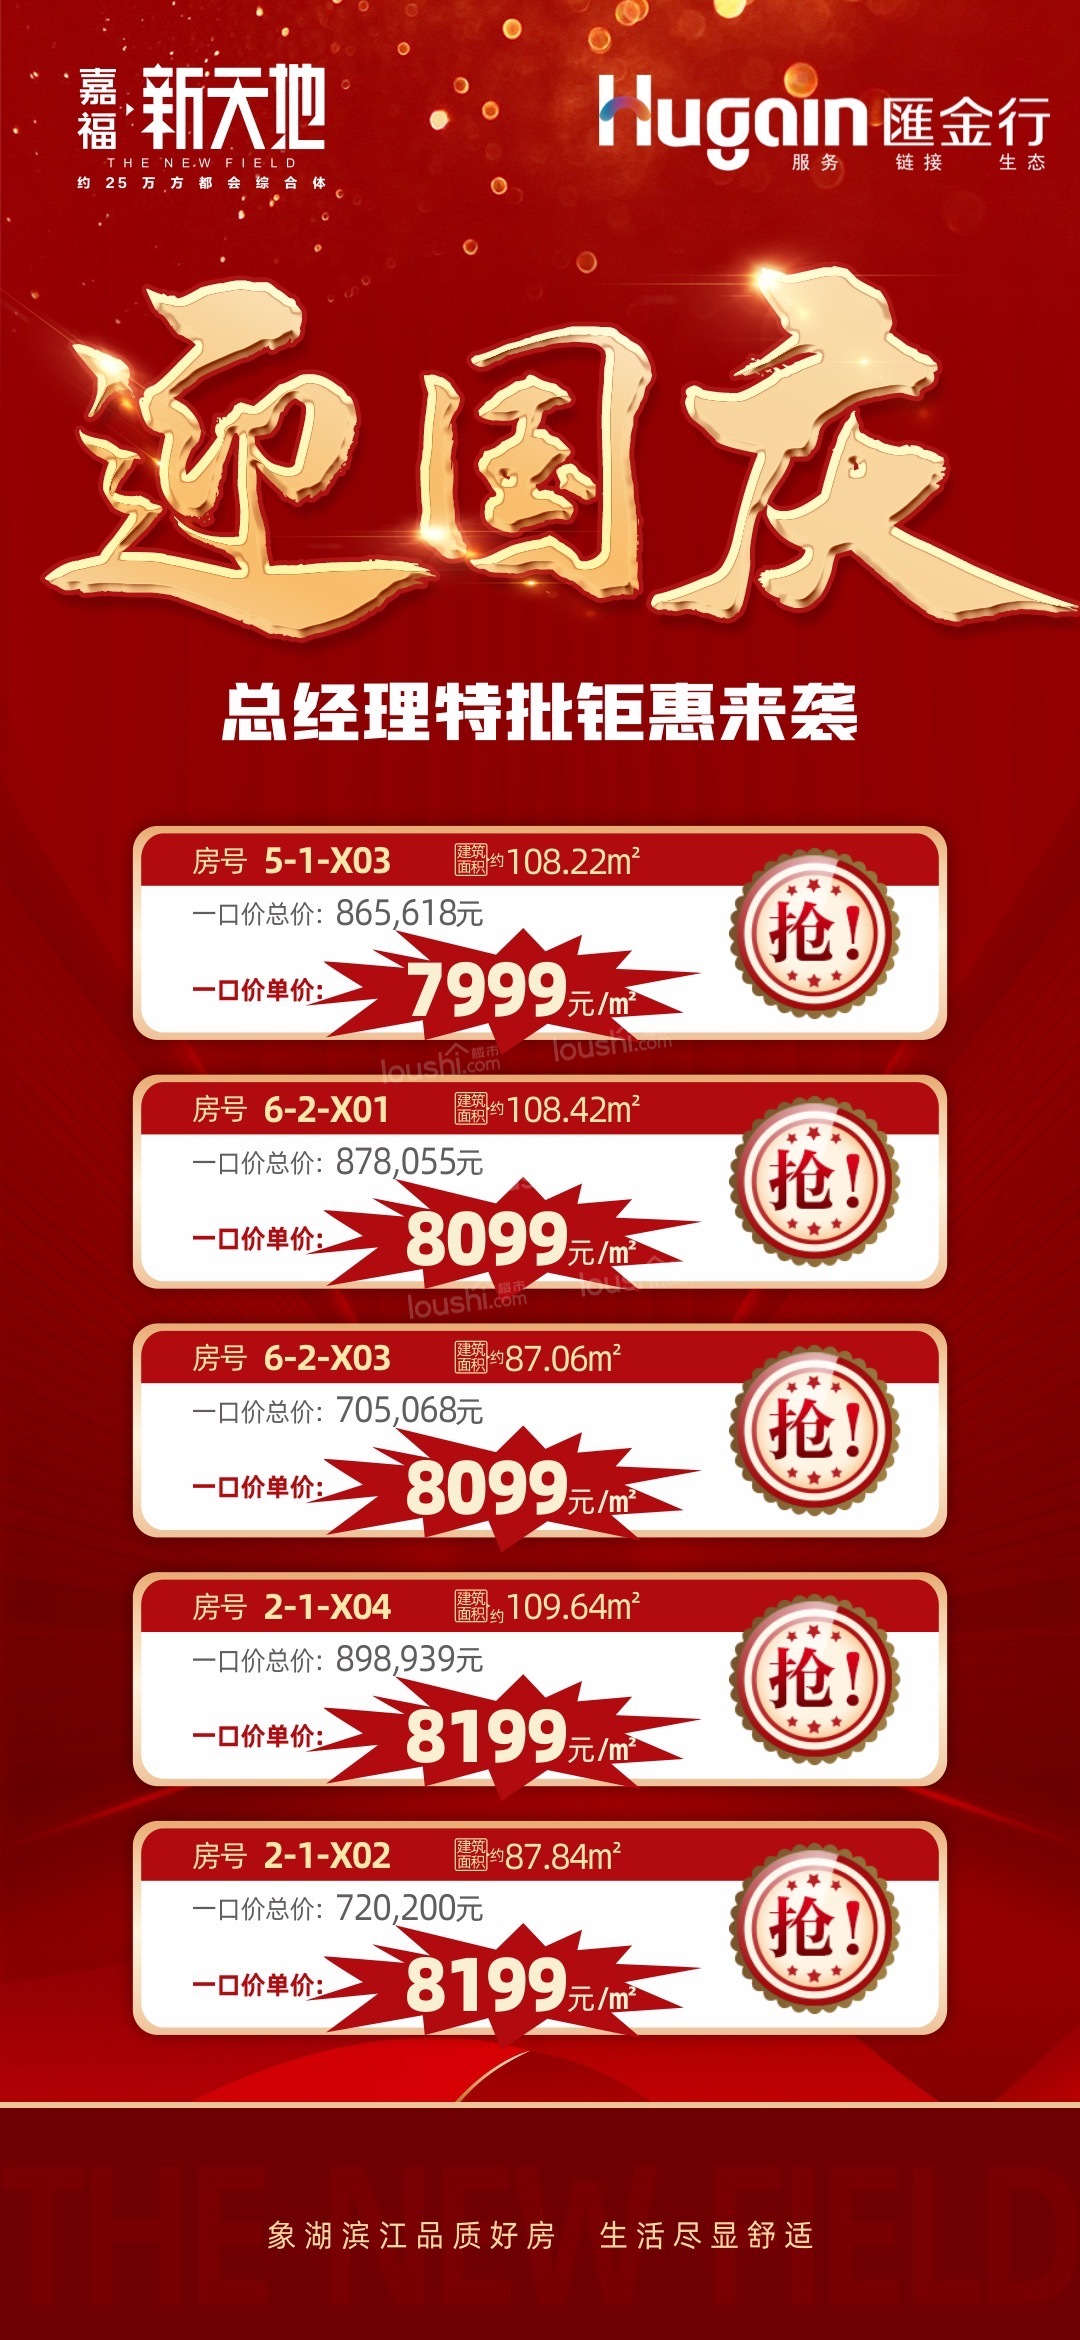 【嘉福新天地】国庆钜惠价7999元/㎡起，五套特价房限时抢购